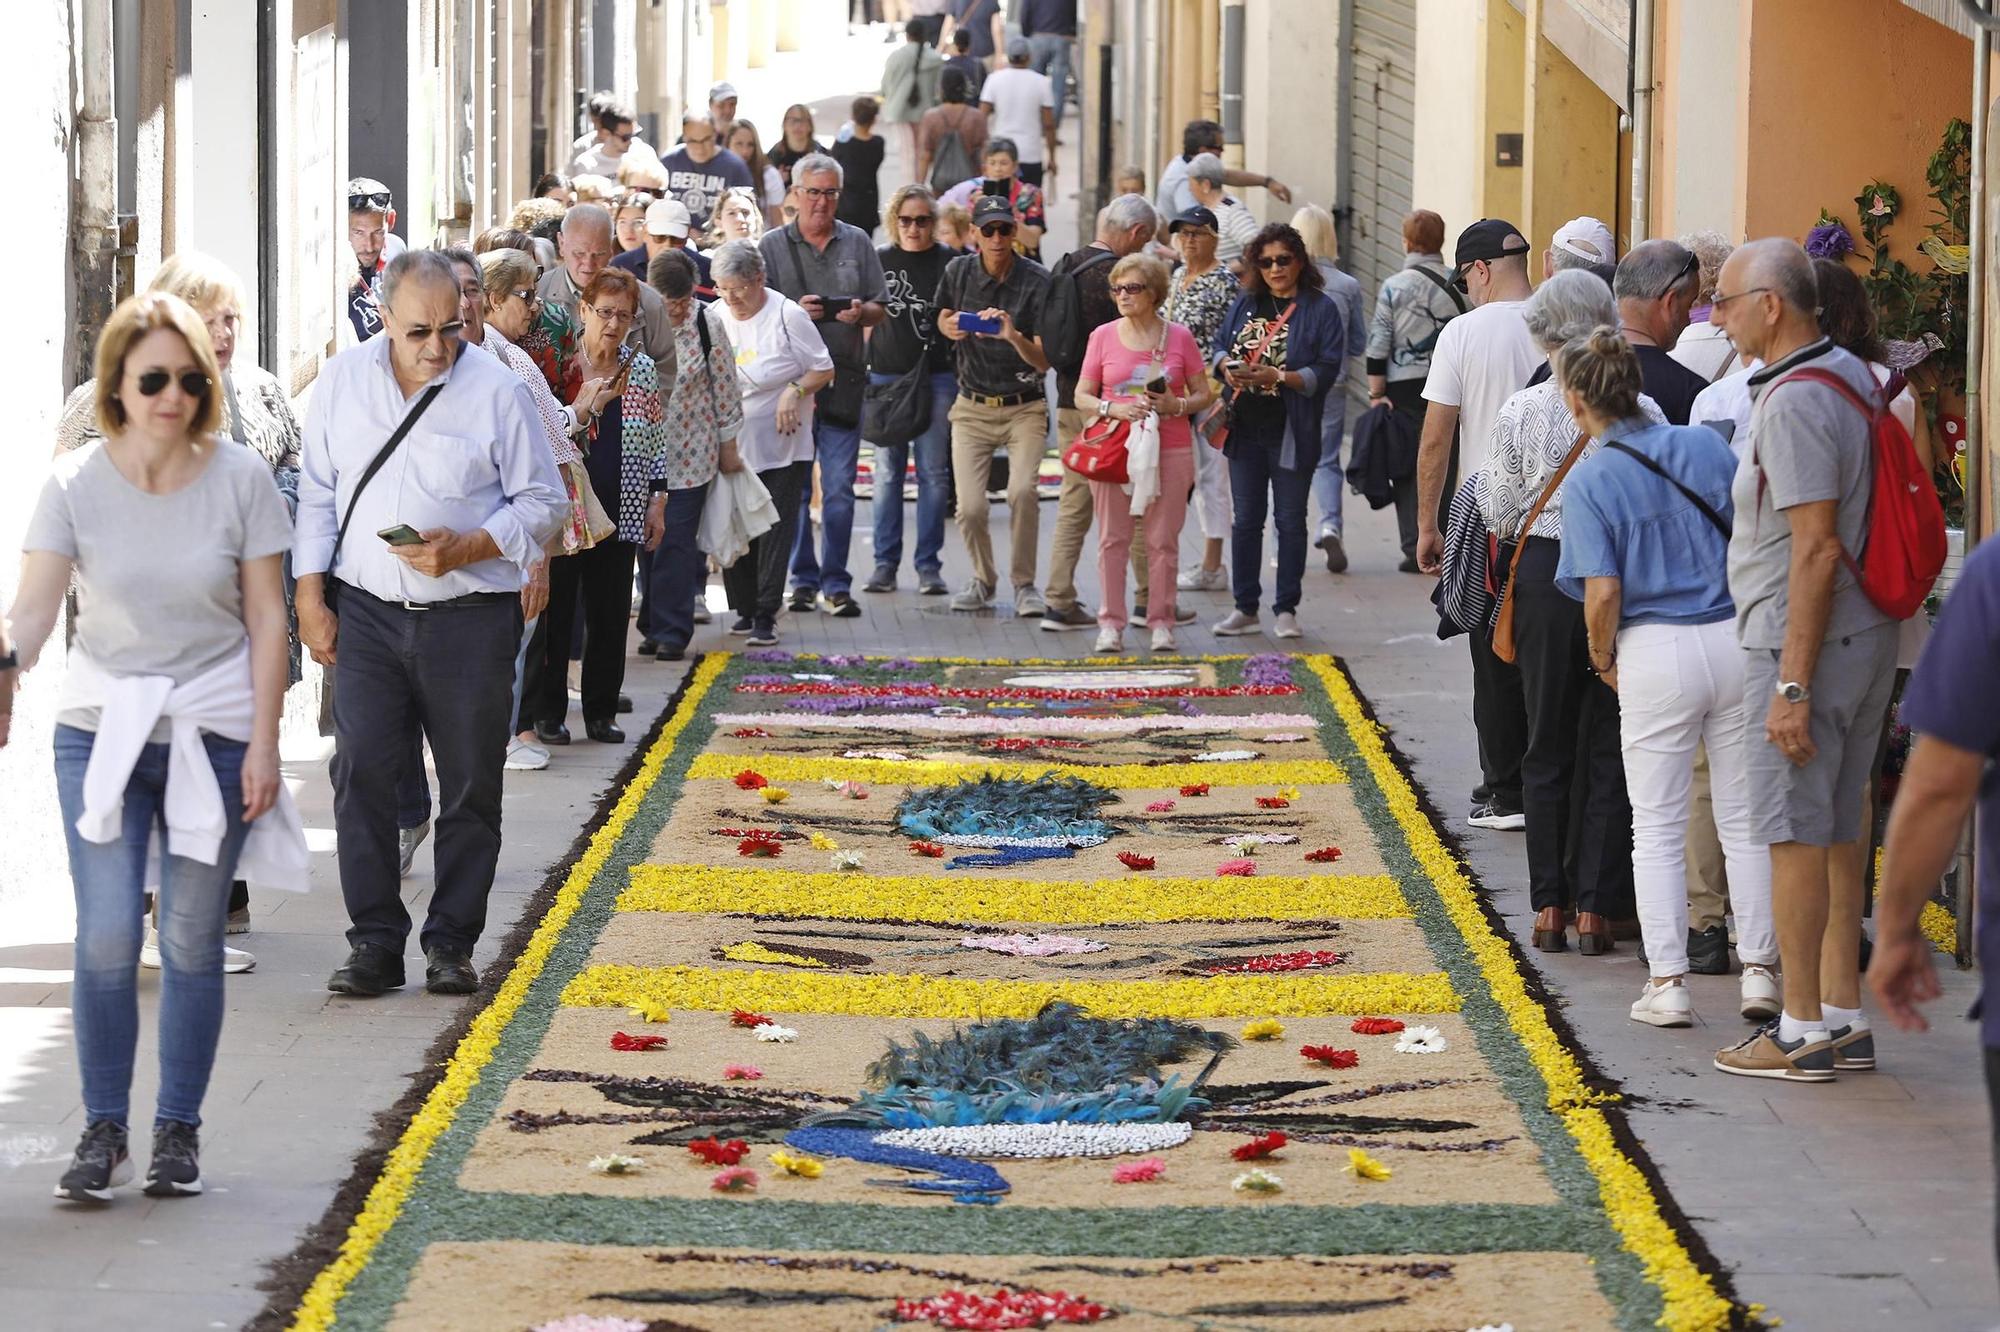 Les catifes de flors tornen a omplir d’art i gent els carrers d’Arbúcies.